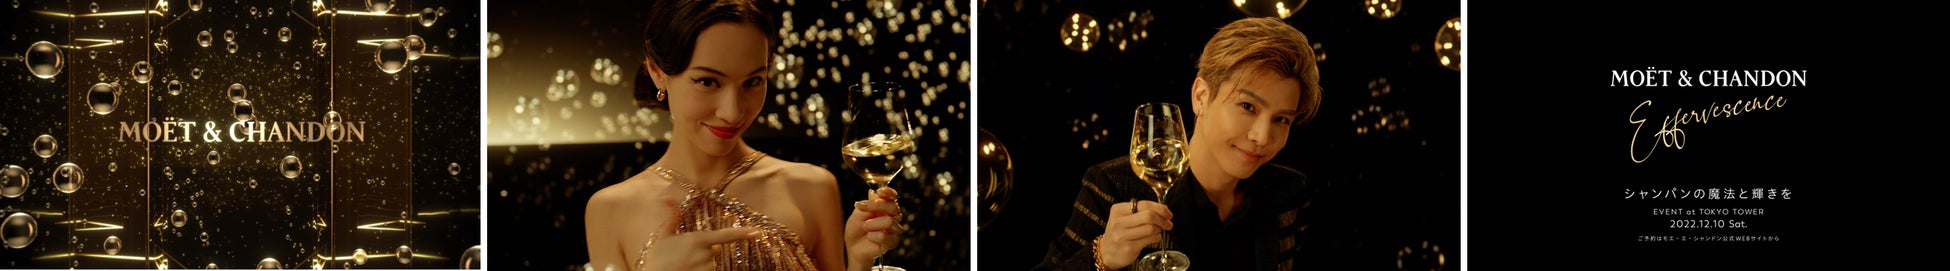 モエ・エ・シャンドン フレンズ オブ ザ ハウスの水原希子さん、岩田剛典さんによるホリデースペシャルムービー「モエ・エ・シャンドン “エフェルヴェソンス” シャンパンの魔法と輝きを」が完成のサブ画像2